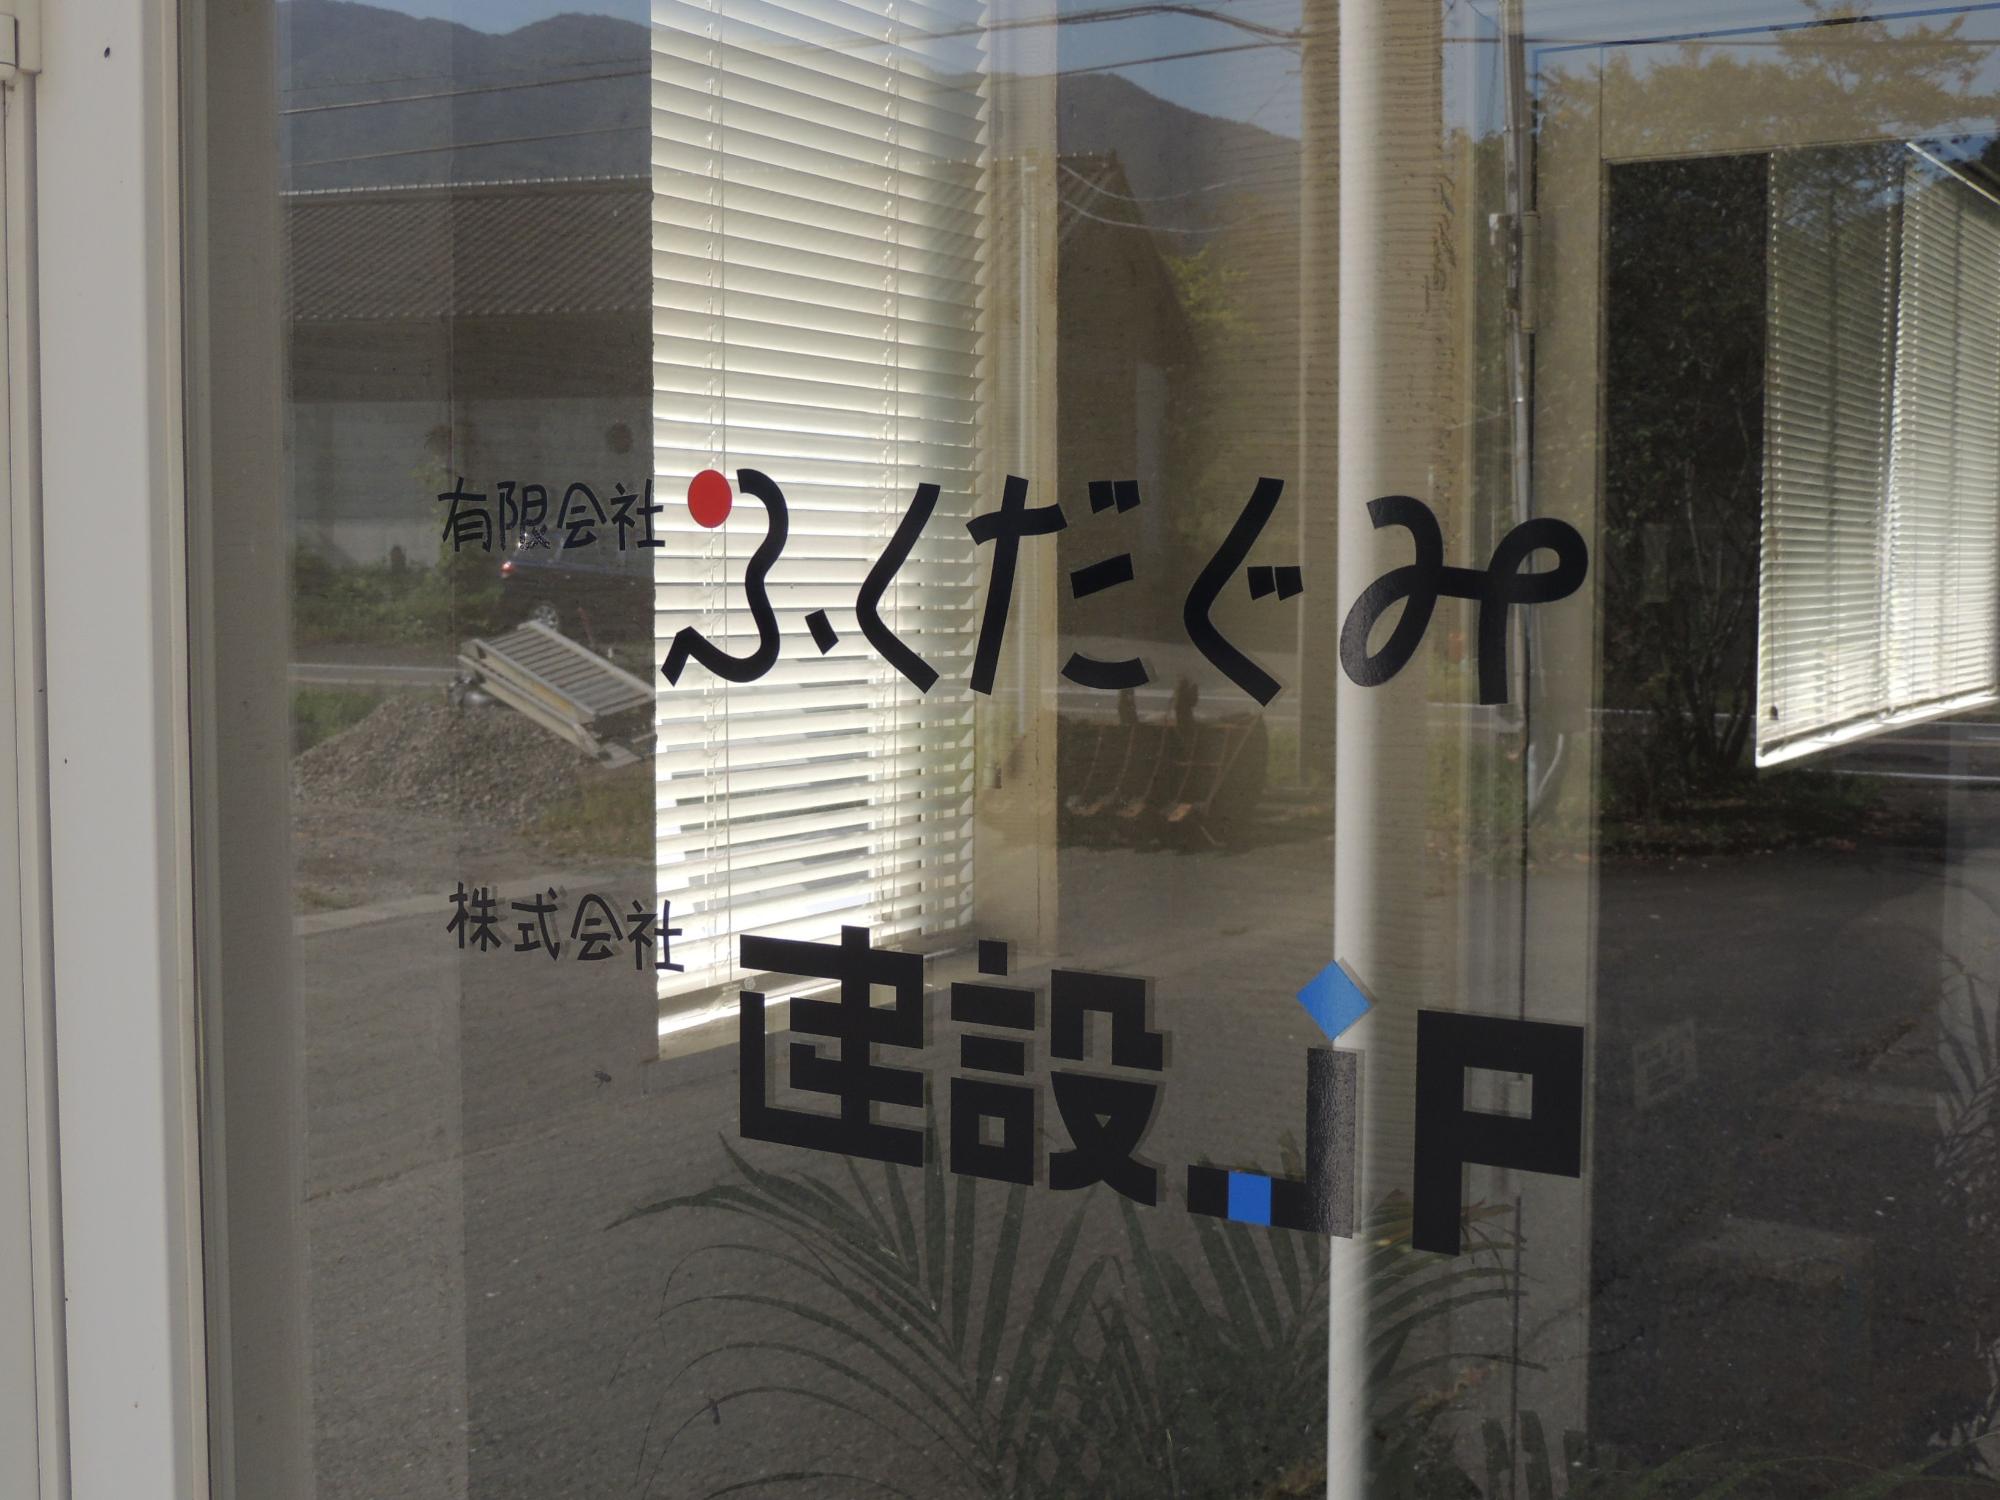 建物入口の窓ガラスに書かれた有限会社ふくだぐみ、株式会社建設JPの文字をアップで撮影した写真